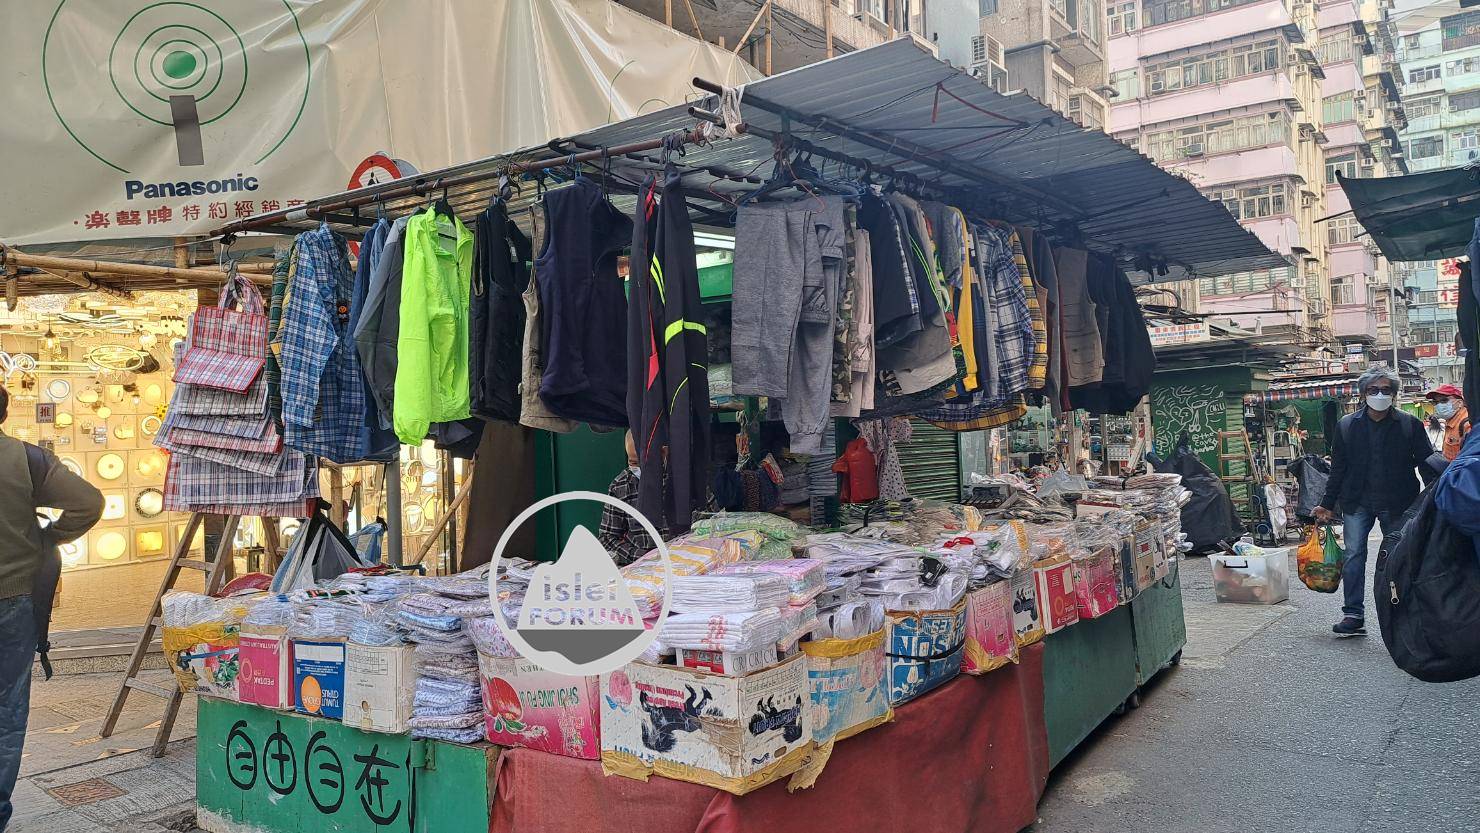 上海街廣東道之間的快富街小販檔 Fife Street Hawker Stall (3).jpg